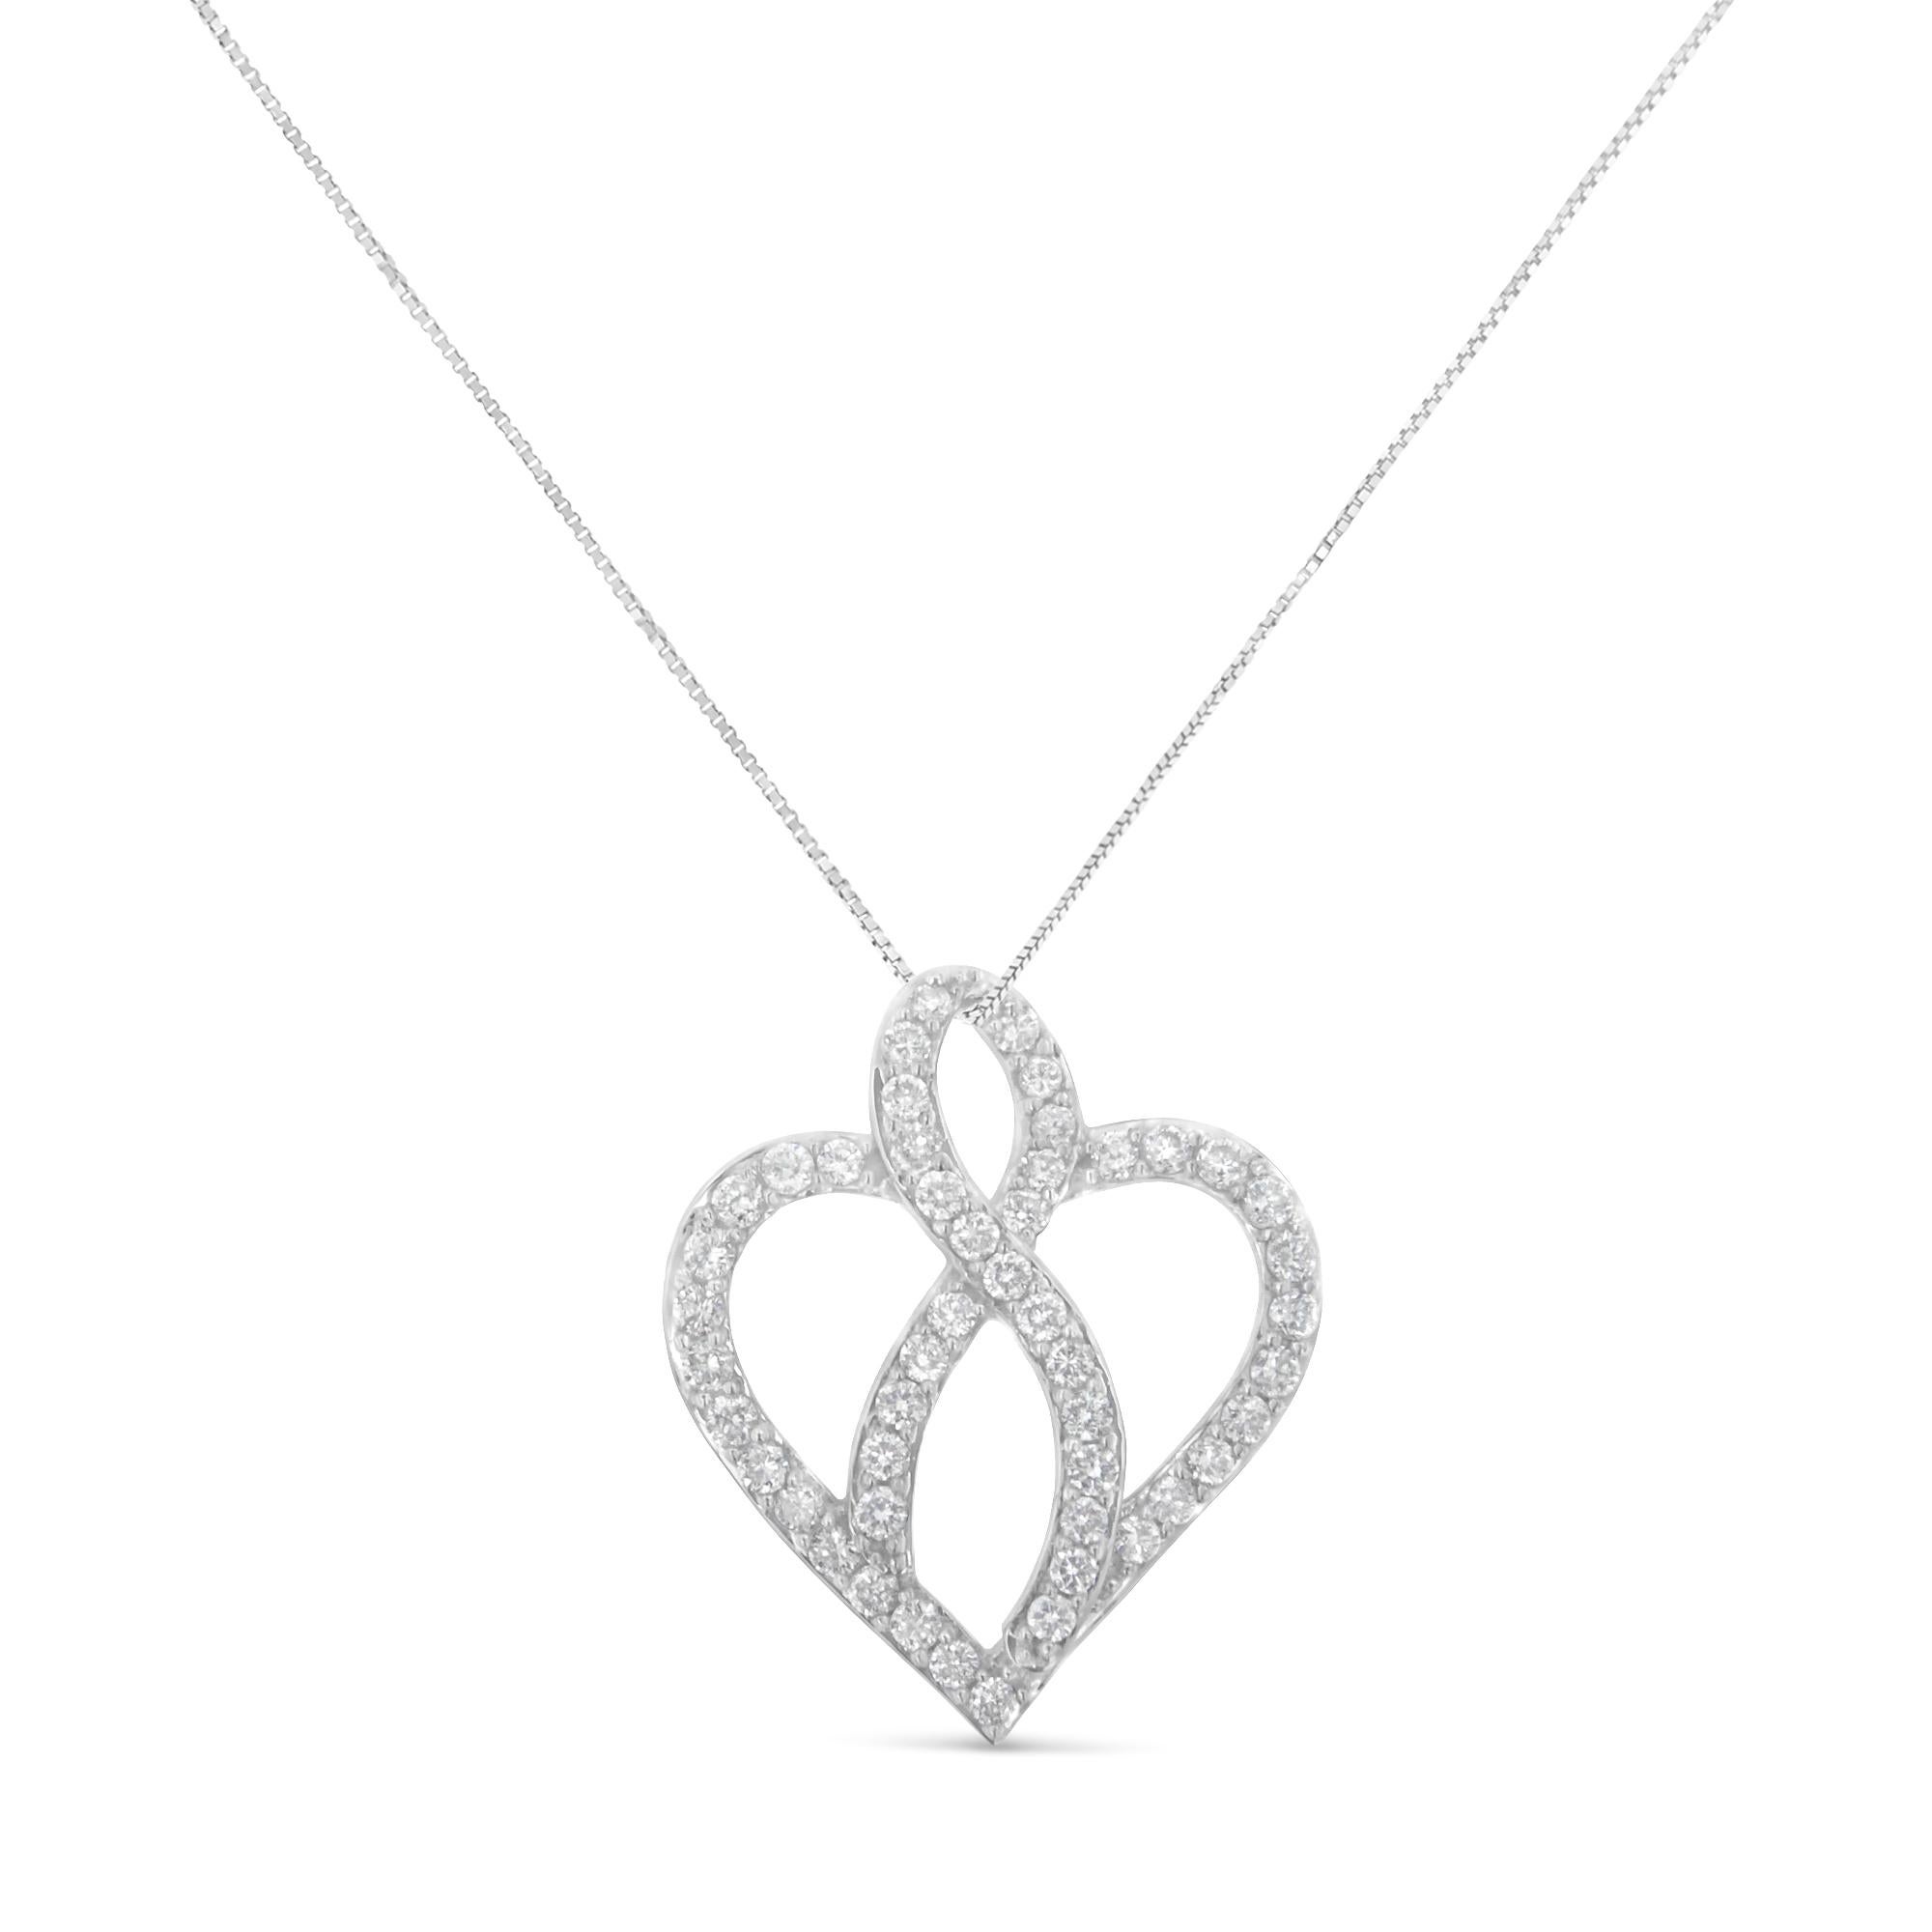 Ce ravissant collier pendentif en forme de cœur en or blanc 14k comporte 1 carat de magnifiques diamants naturels. Le cœur est entrecoupé d'un ruban en son centre, et les deux motifs sont agrémentés de diamants de taille ronde dans un élégant